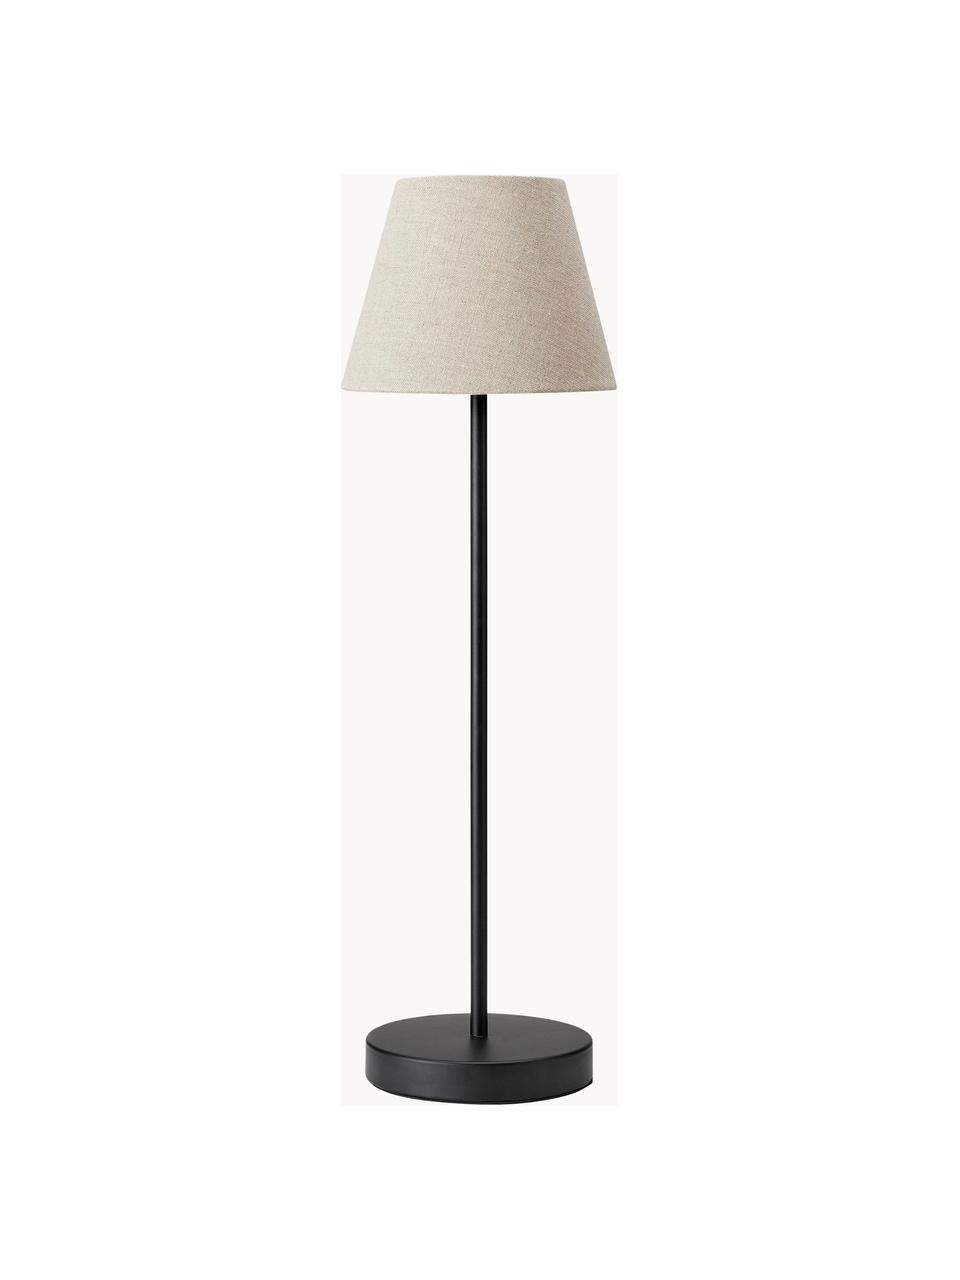 Große Tischlampe Cozy, Lampenschirm: Textil, Beige, Schwarz, Ø 18 x H 63 cm